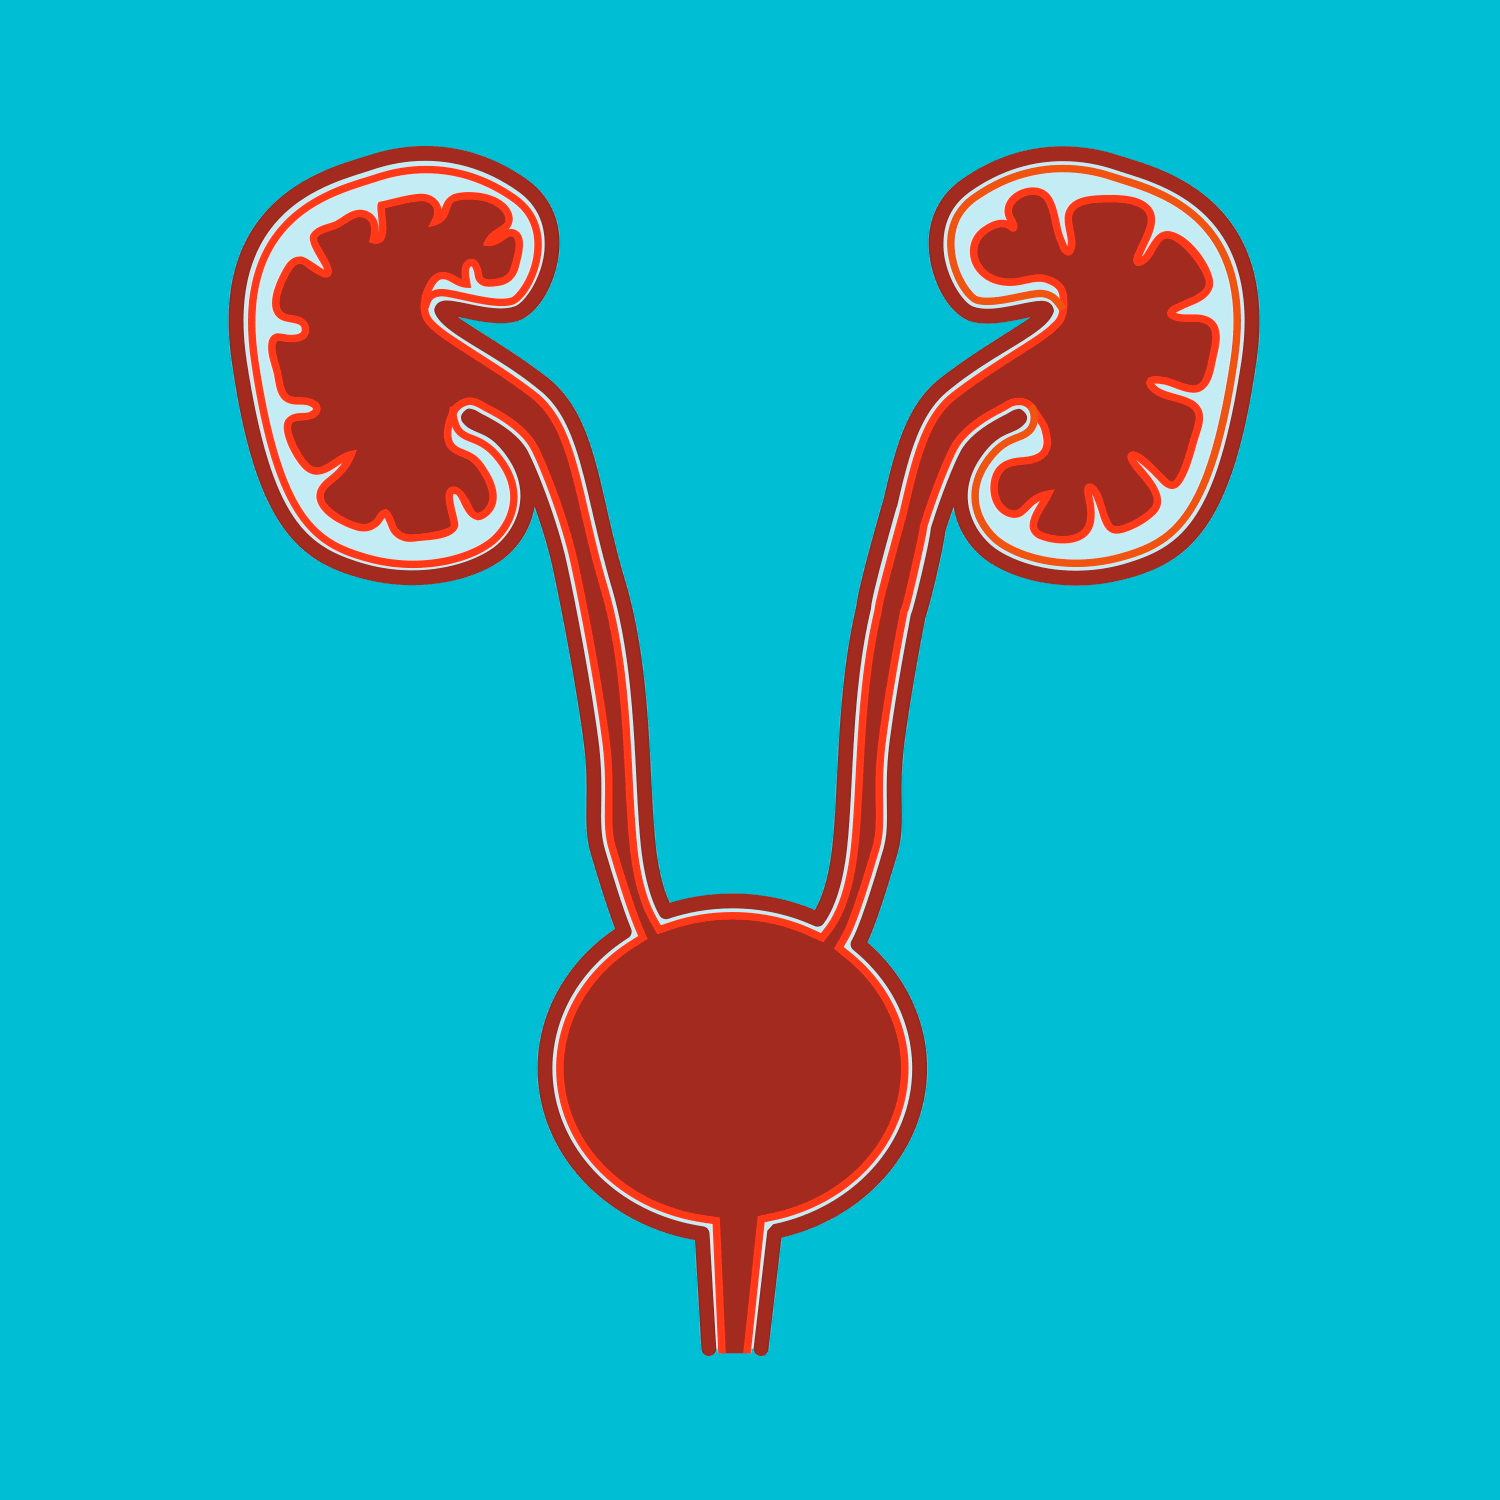 UNIDAD V. Capítulo 26: “Formación de la orina por los riñones: I.  Filtración glomerular, flujo sanguíneo renal y su control” – Ana Montejo,  Fisiología